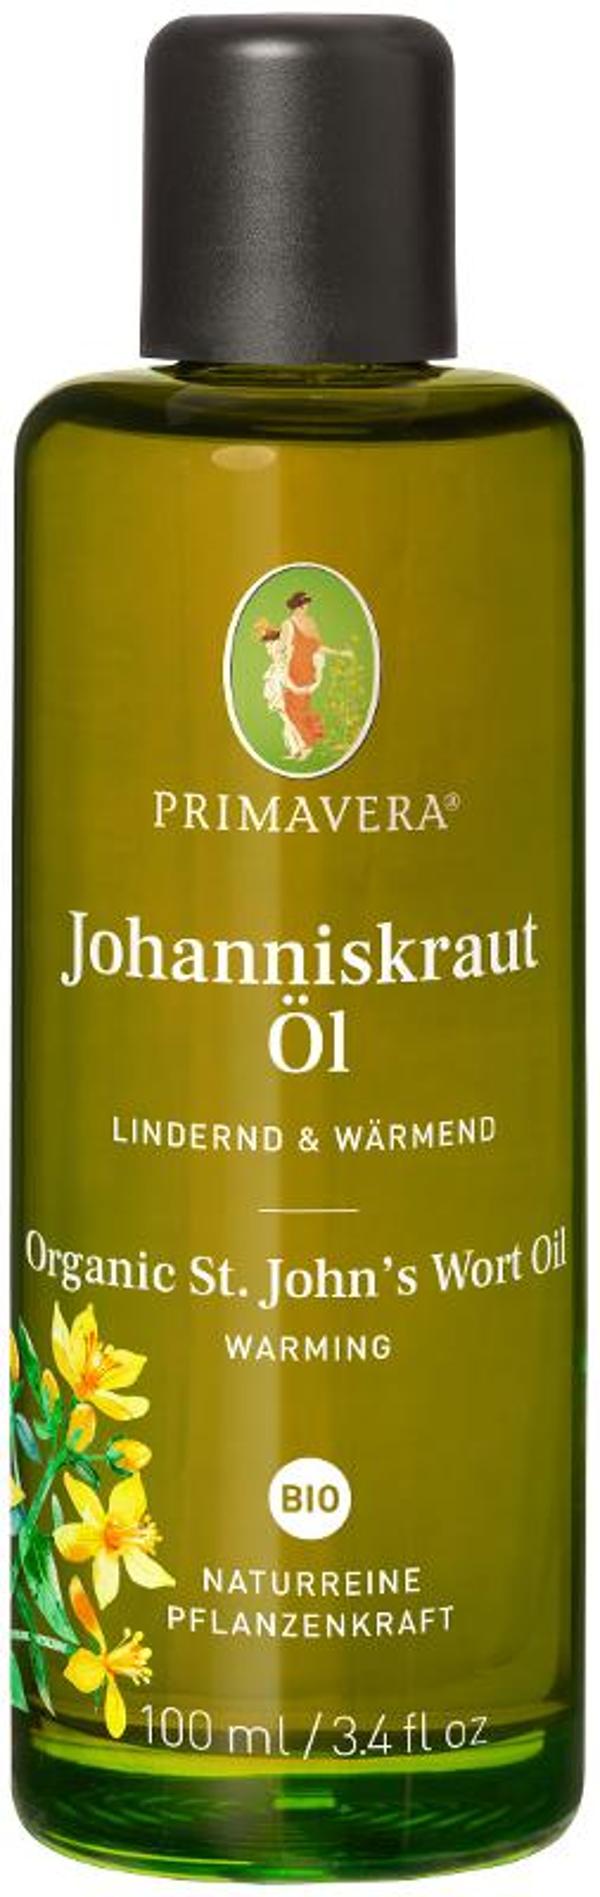 Produktfoto zu Johanniskraut Pflegeöl 100 ml